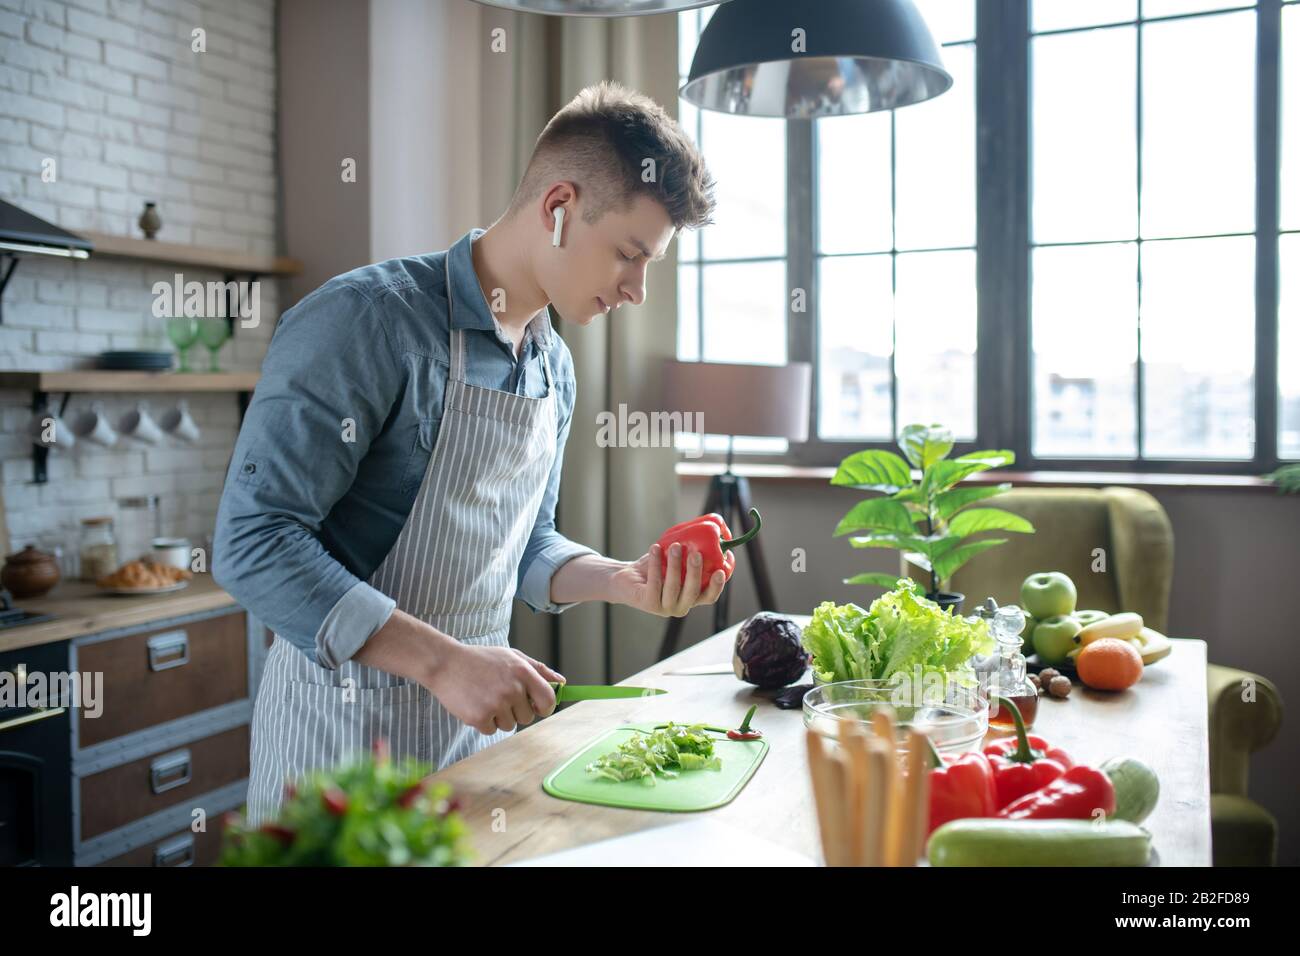 Un jeune homme qui a réussi à trancher des légumes frais dans la cuisine. Banque D'Images